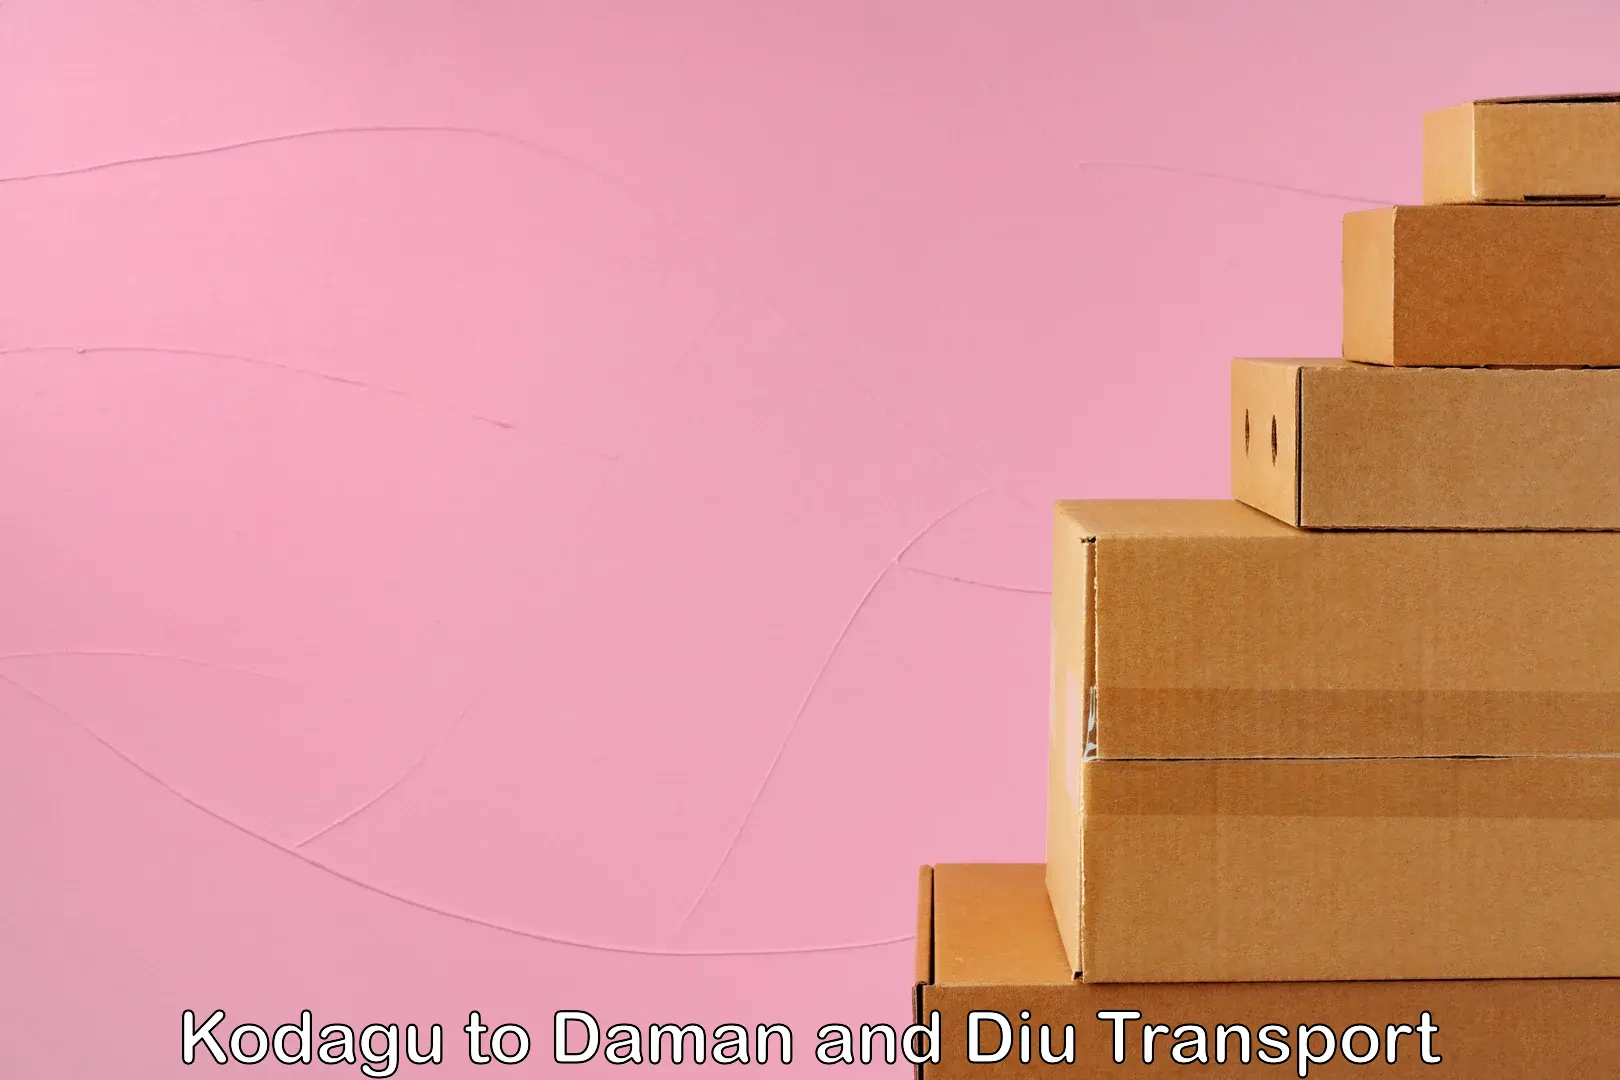 Cargo transport services Kodagu to Daman and Diu